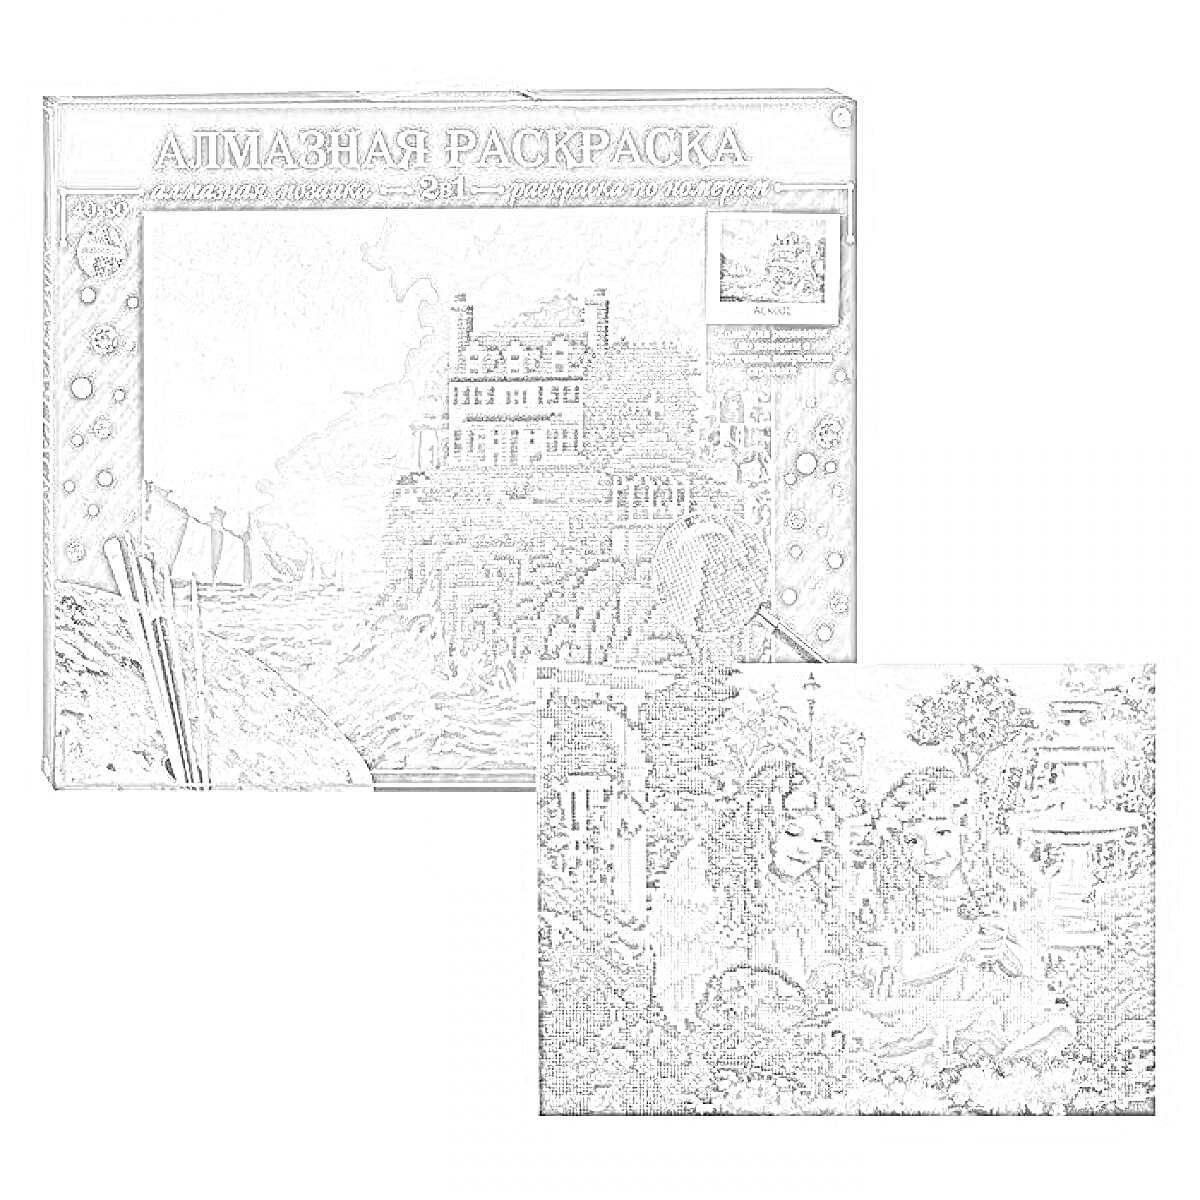 Раскраска Алмазная раскраска - пейзаж с большой белой усадьбой, деревьями и белыми кораблями на воде, девочки в ангельских нарядах у фонтана